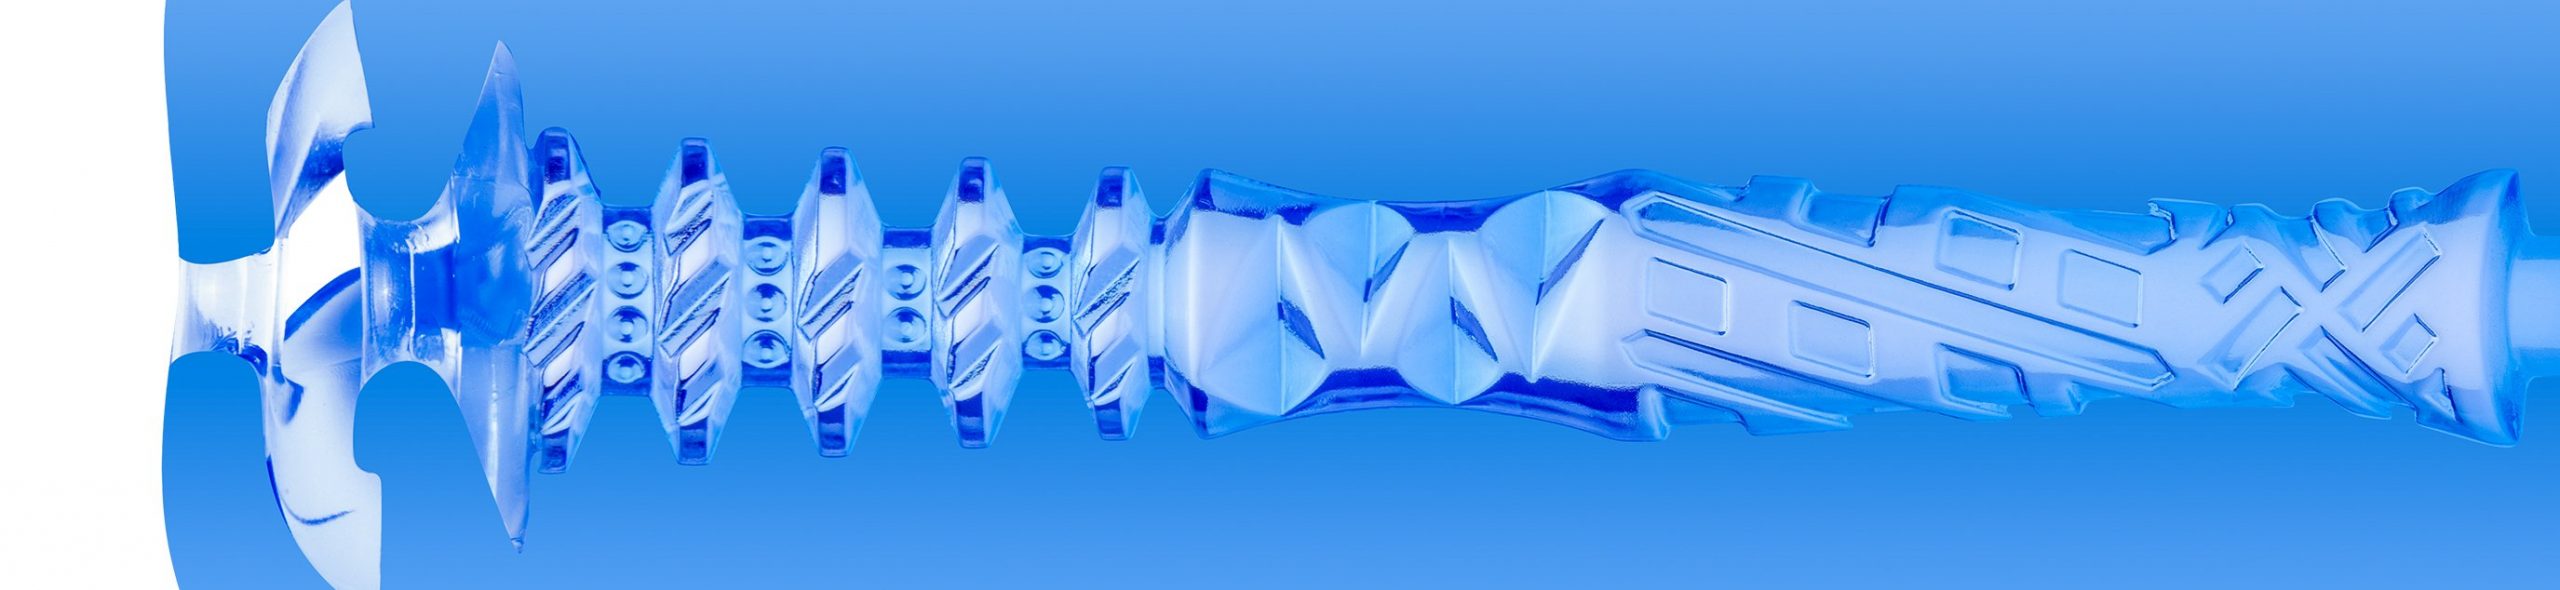 Turbo-Thrust-by-Fleshlight-blue-ice-inner-chamber-scaled